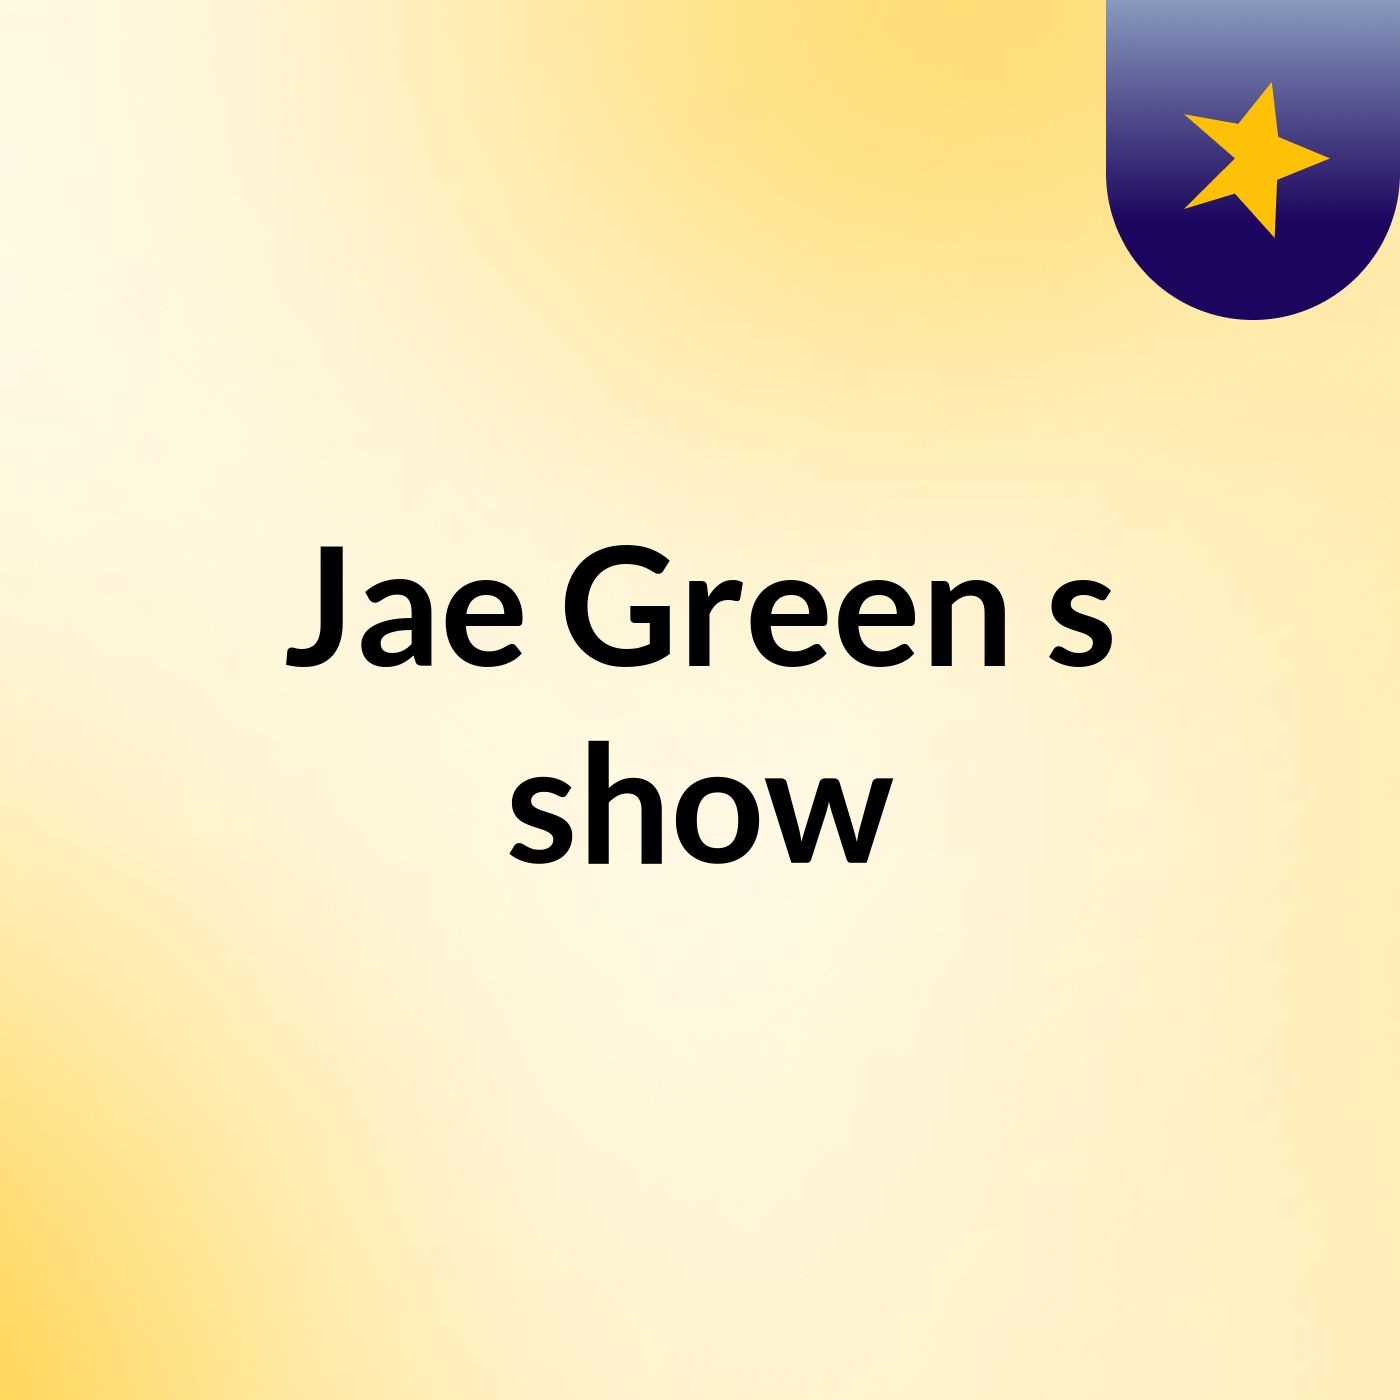 Jae Green's show